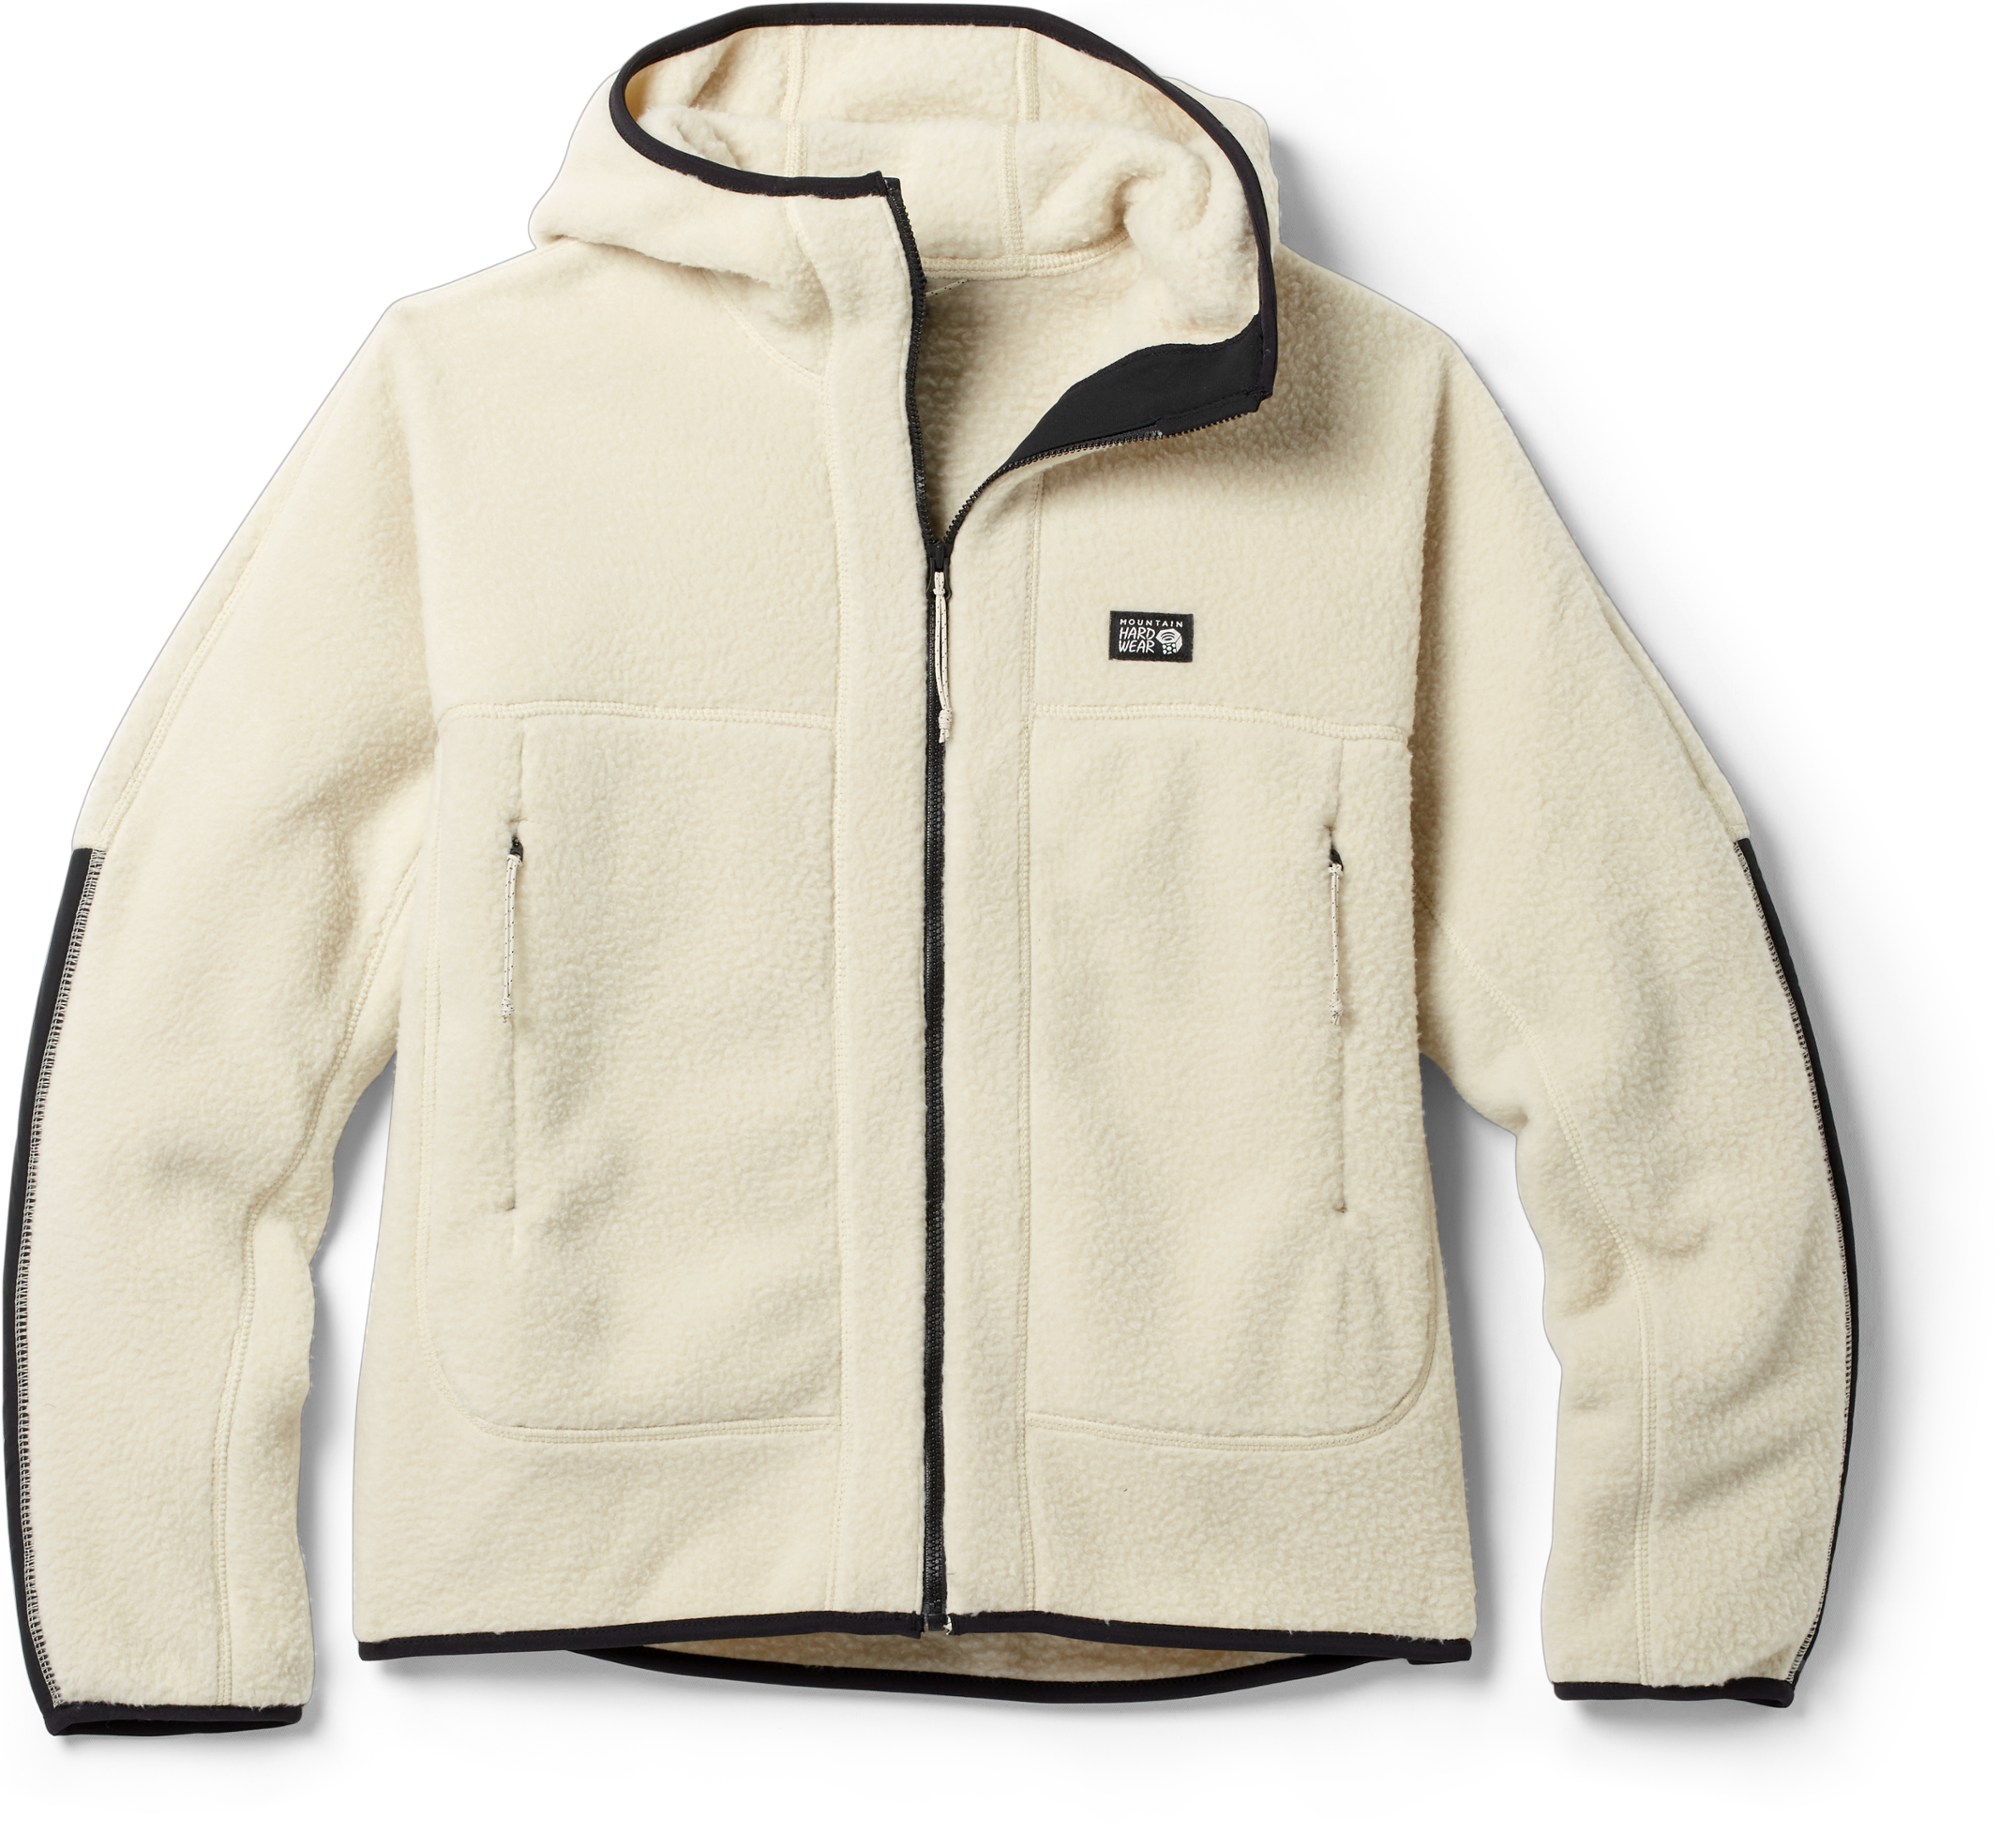 mountain hardwear fleece jacket from rei holiday warm up sale